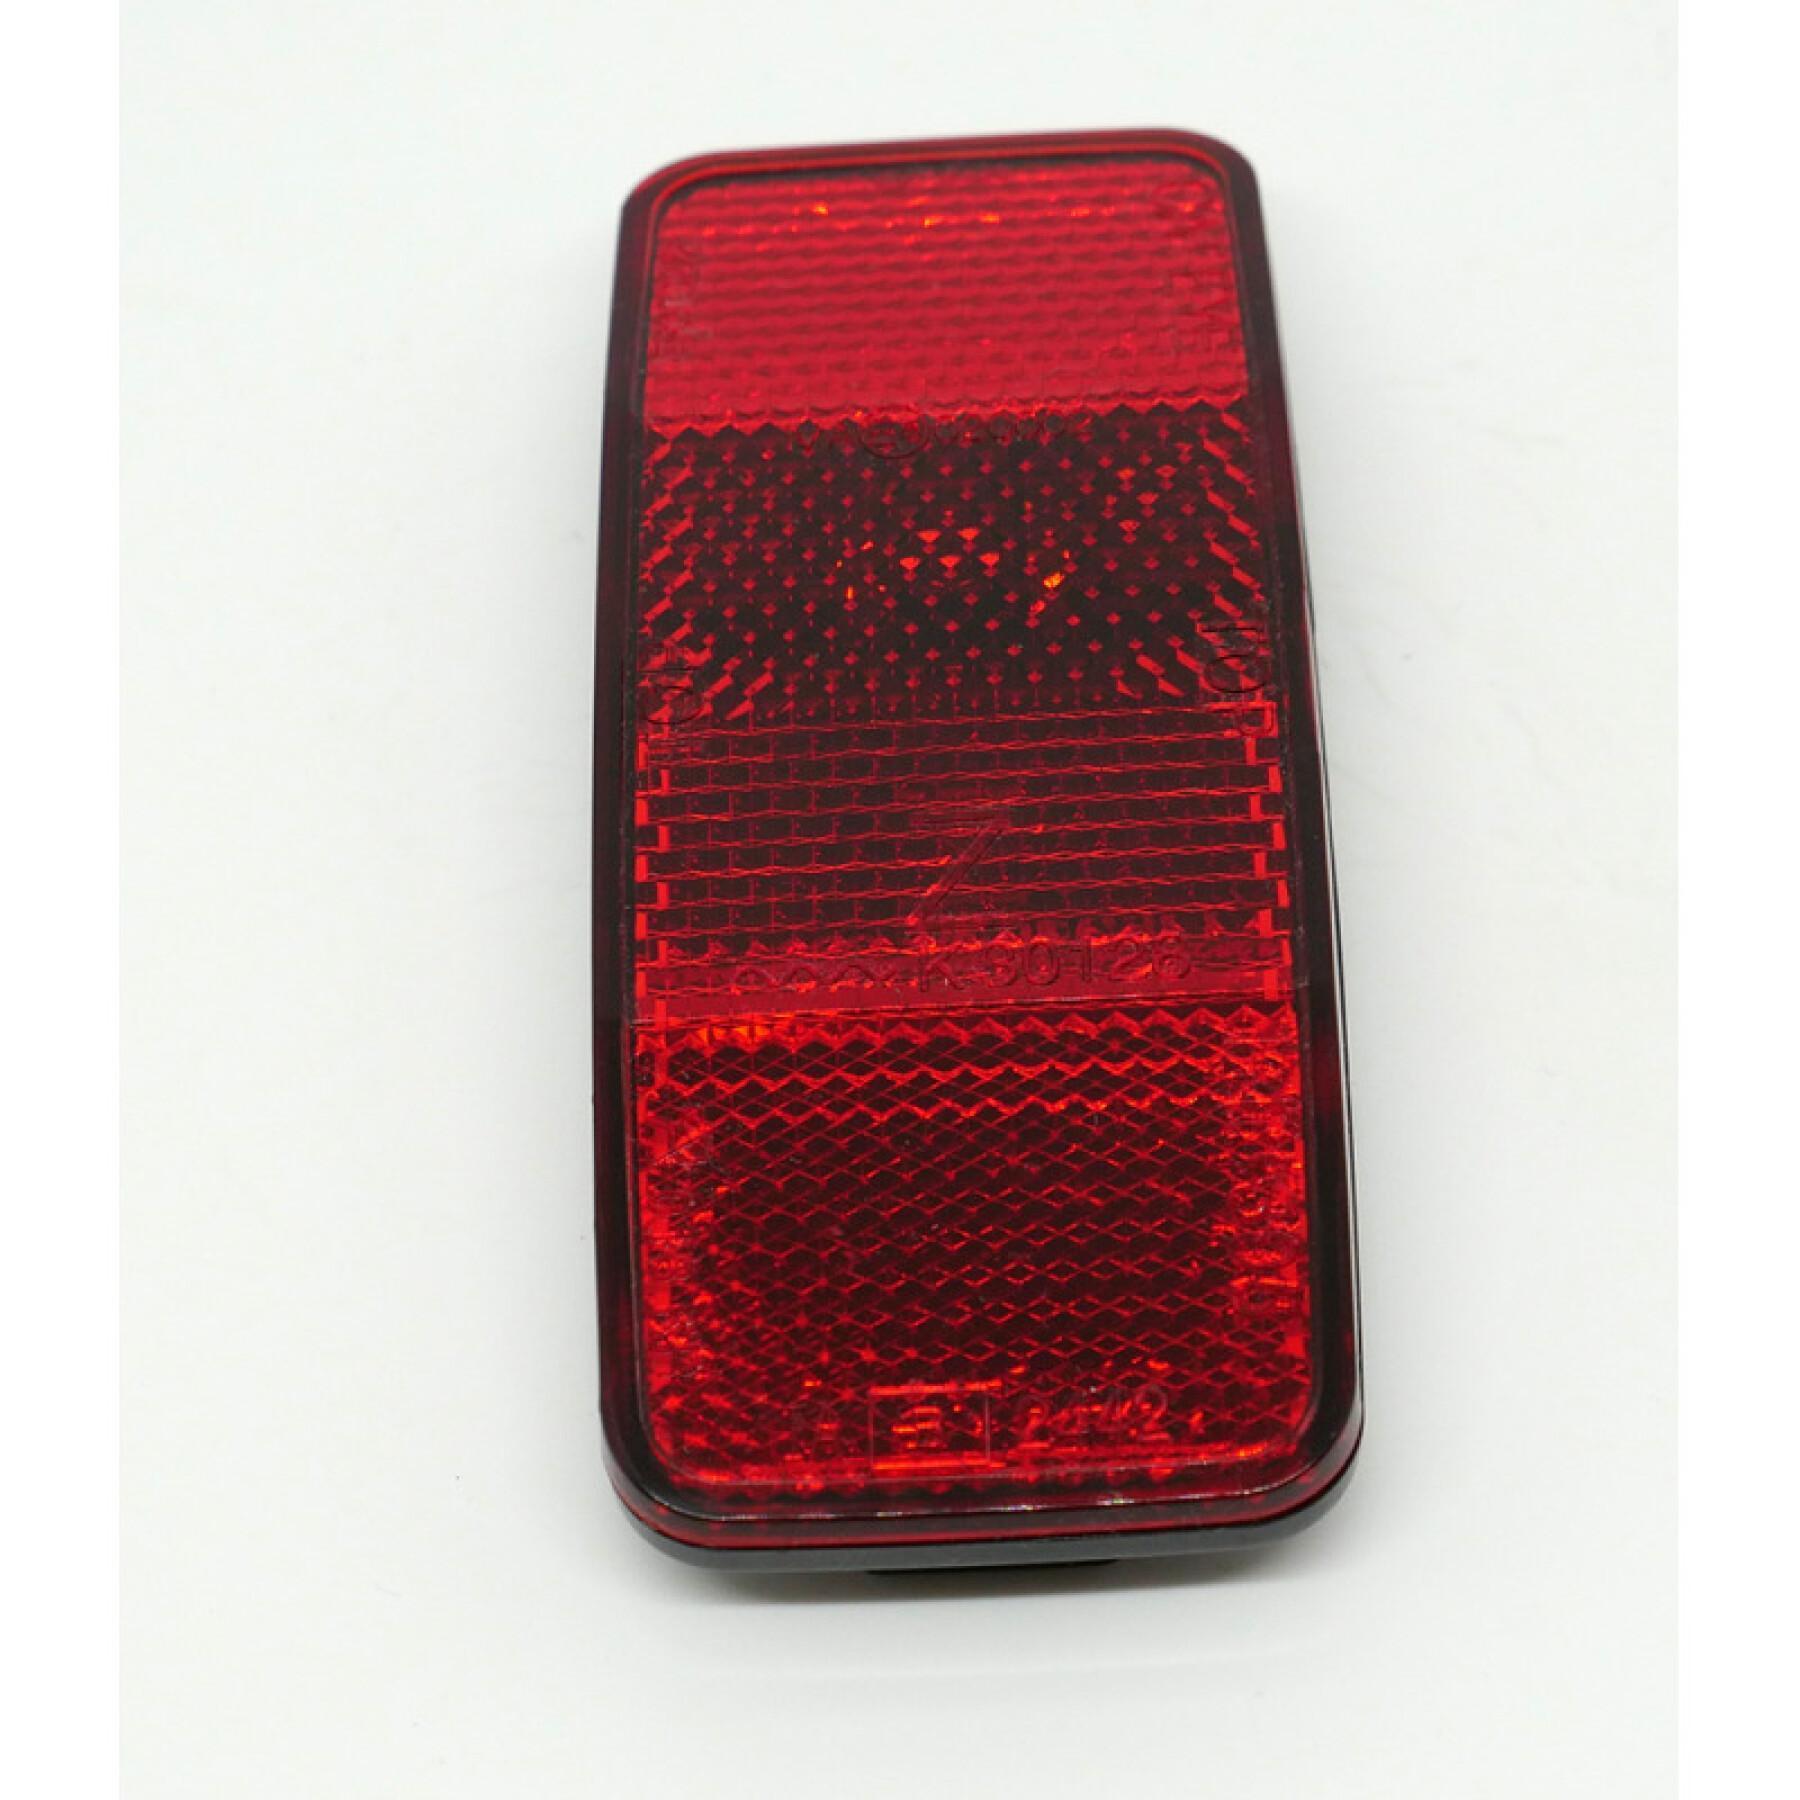 Rode reflector set gemarkeerd z & k compatibel met alle aanhangwagens Hamax